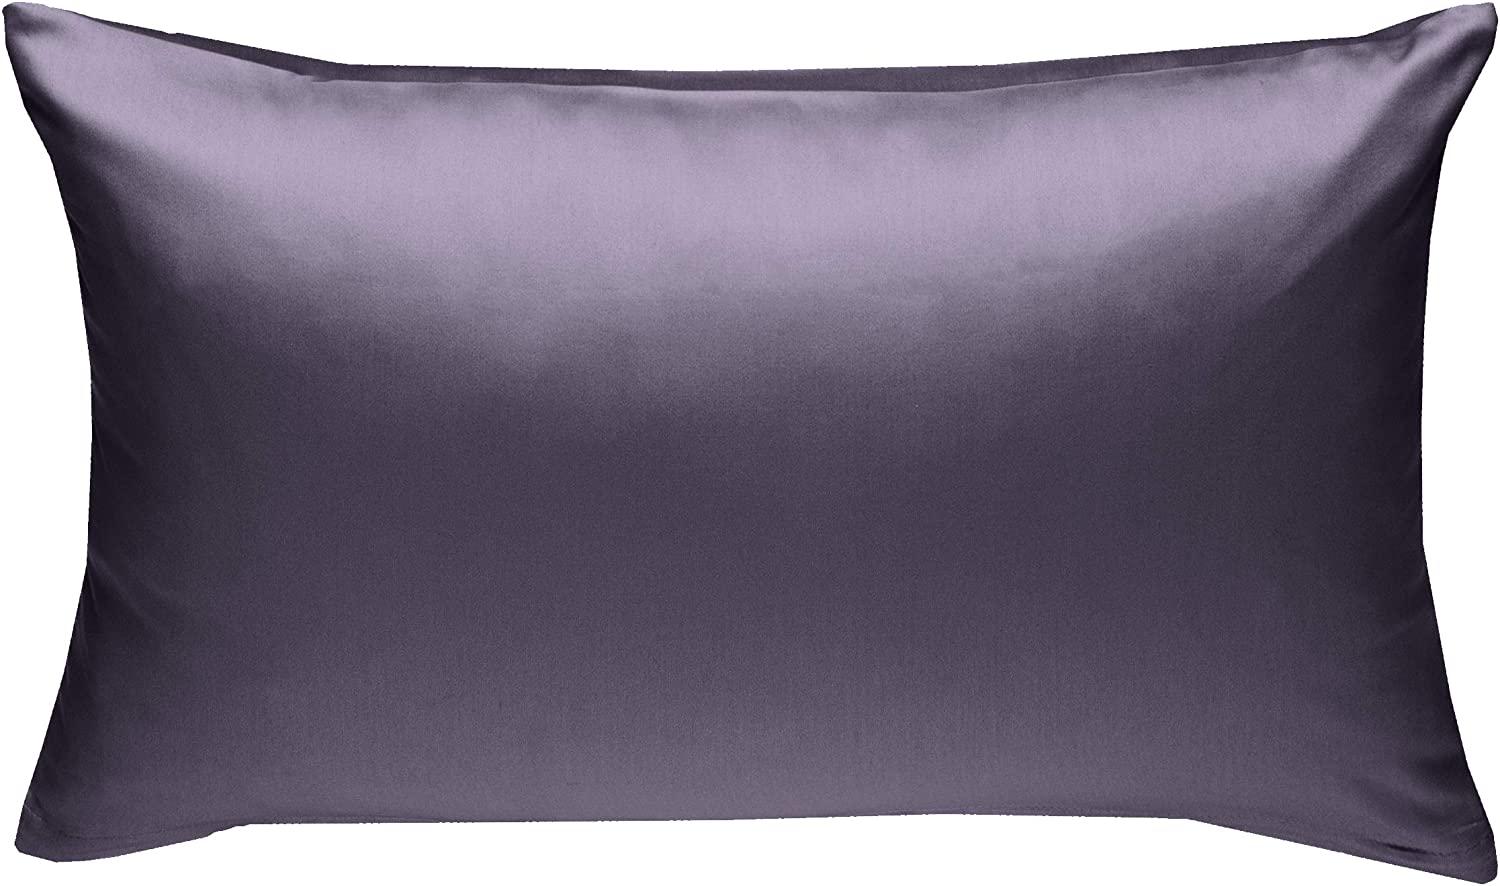 Bettwaesche-mit-Stil Mako-Satin / Baumwollsatin Bettwäsche uni / einfarbig lila Kissenbezug 40x60 cm Bild 1